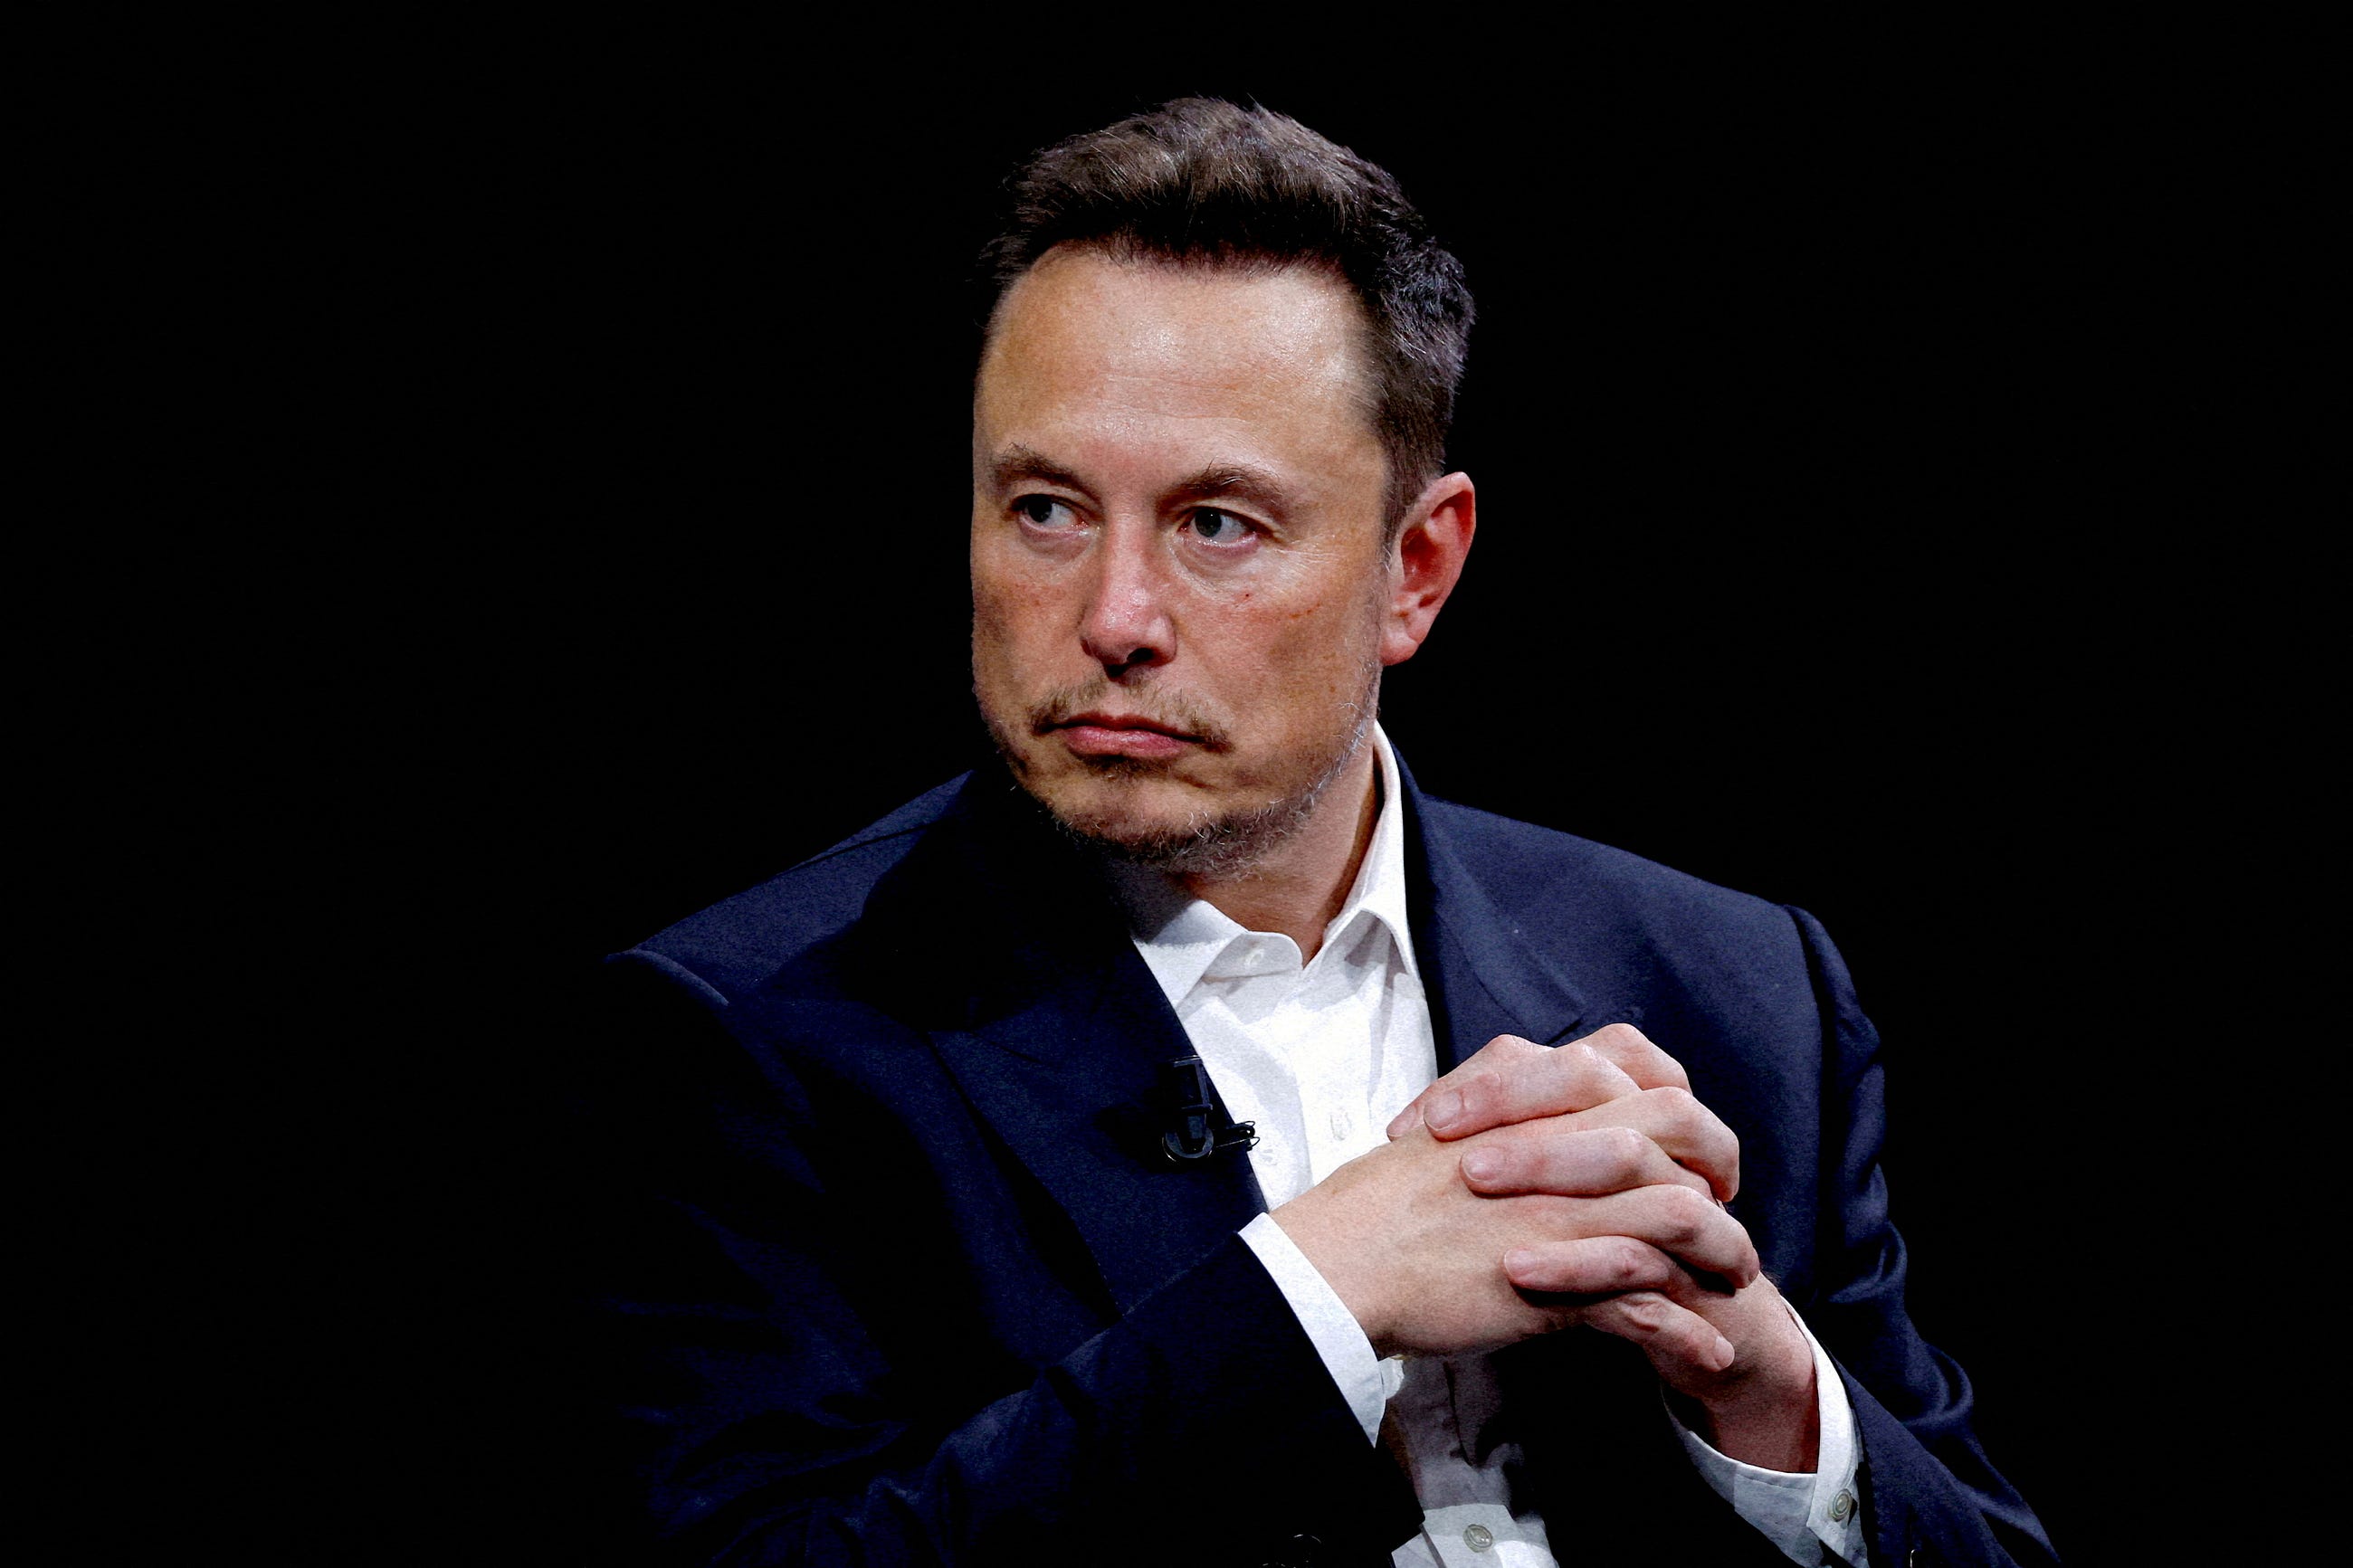 Elon Musk: The Extraordinary Journey of a Modern Renaissance Man